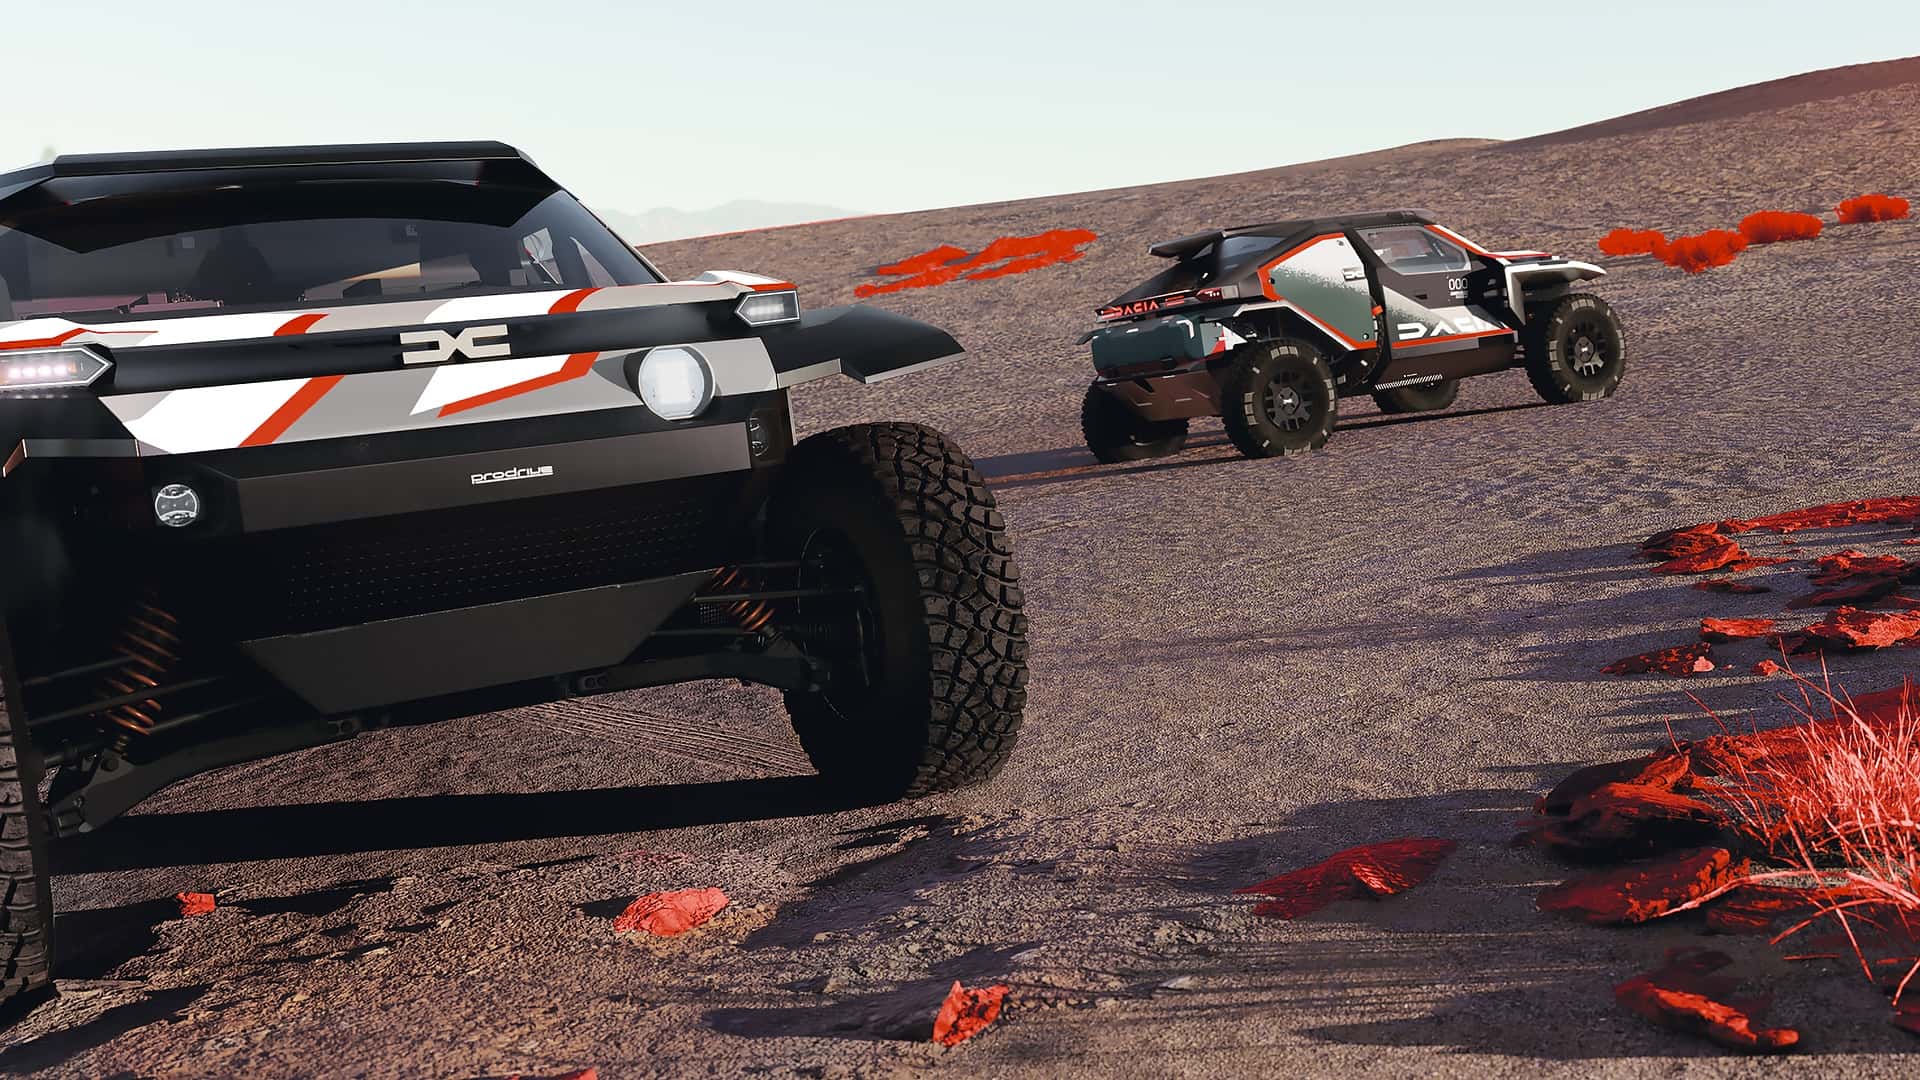 Dacia, yeni Sandrider ile Dakar'a katılacak